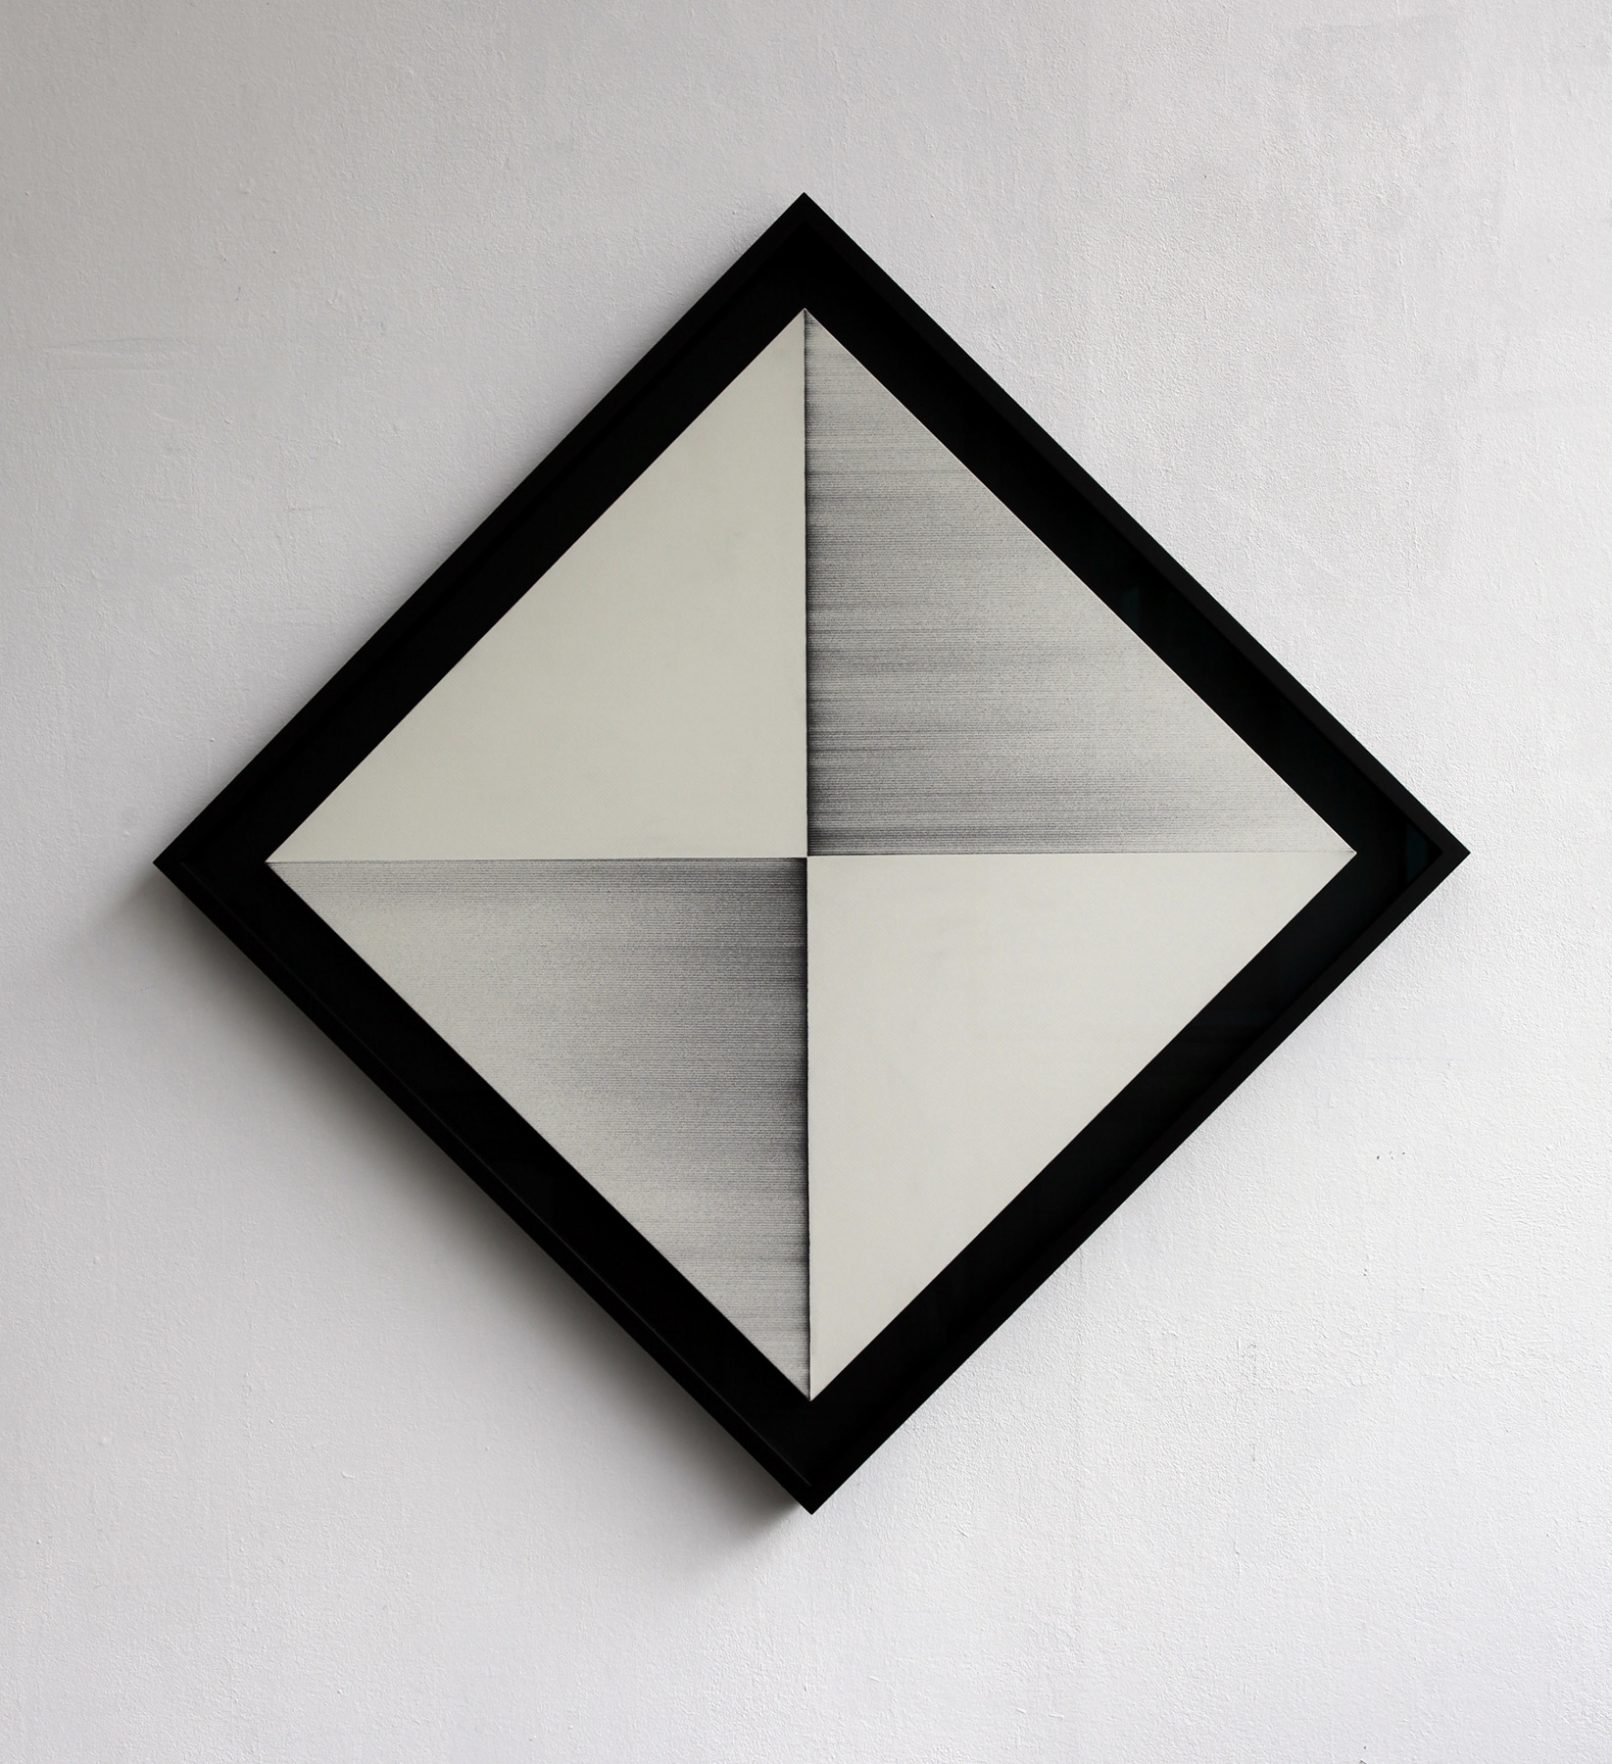 "jiba kr 2" - 2011 / magnet, acrylic, iron turnings on canvas / framed 72 x 72 x 5 cm